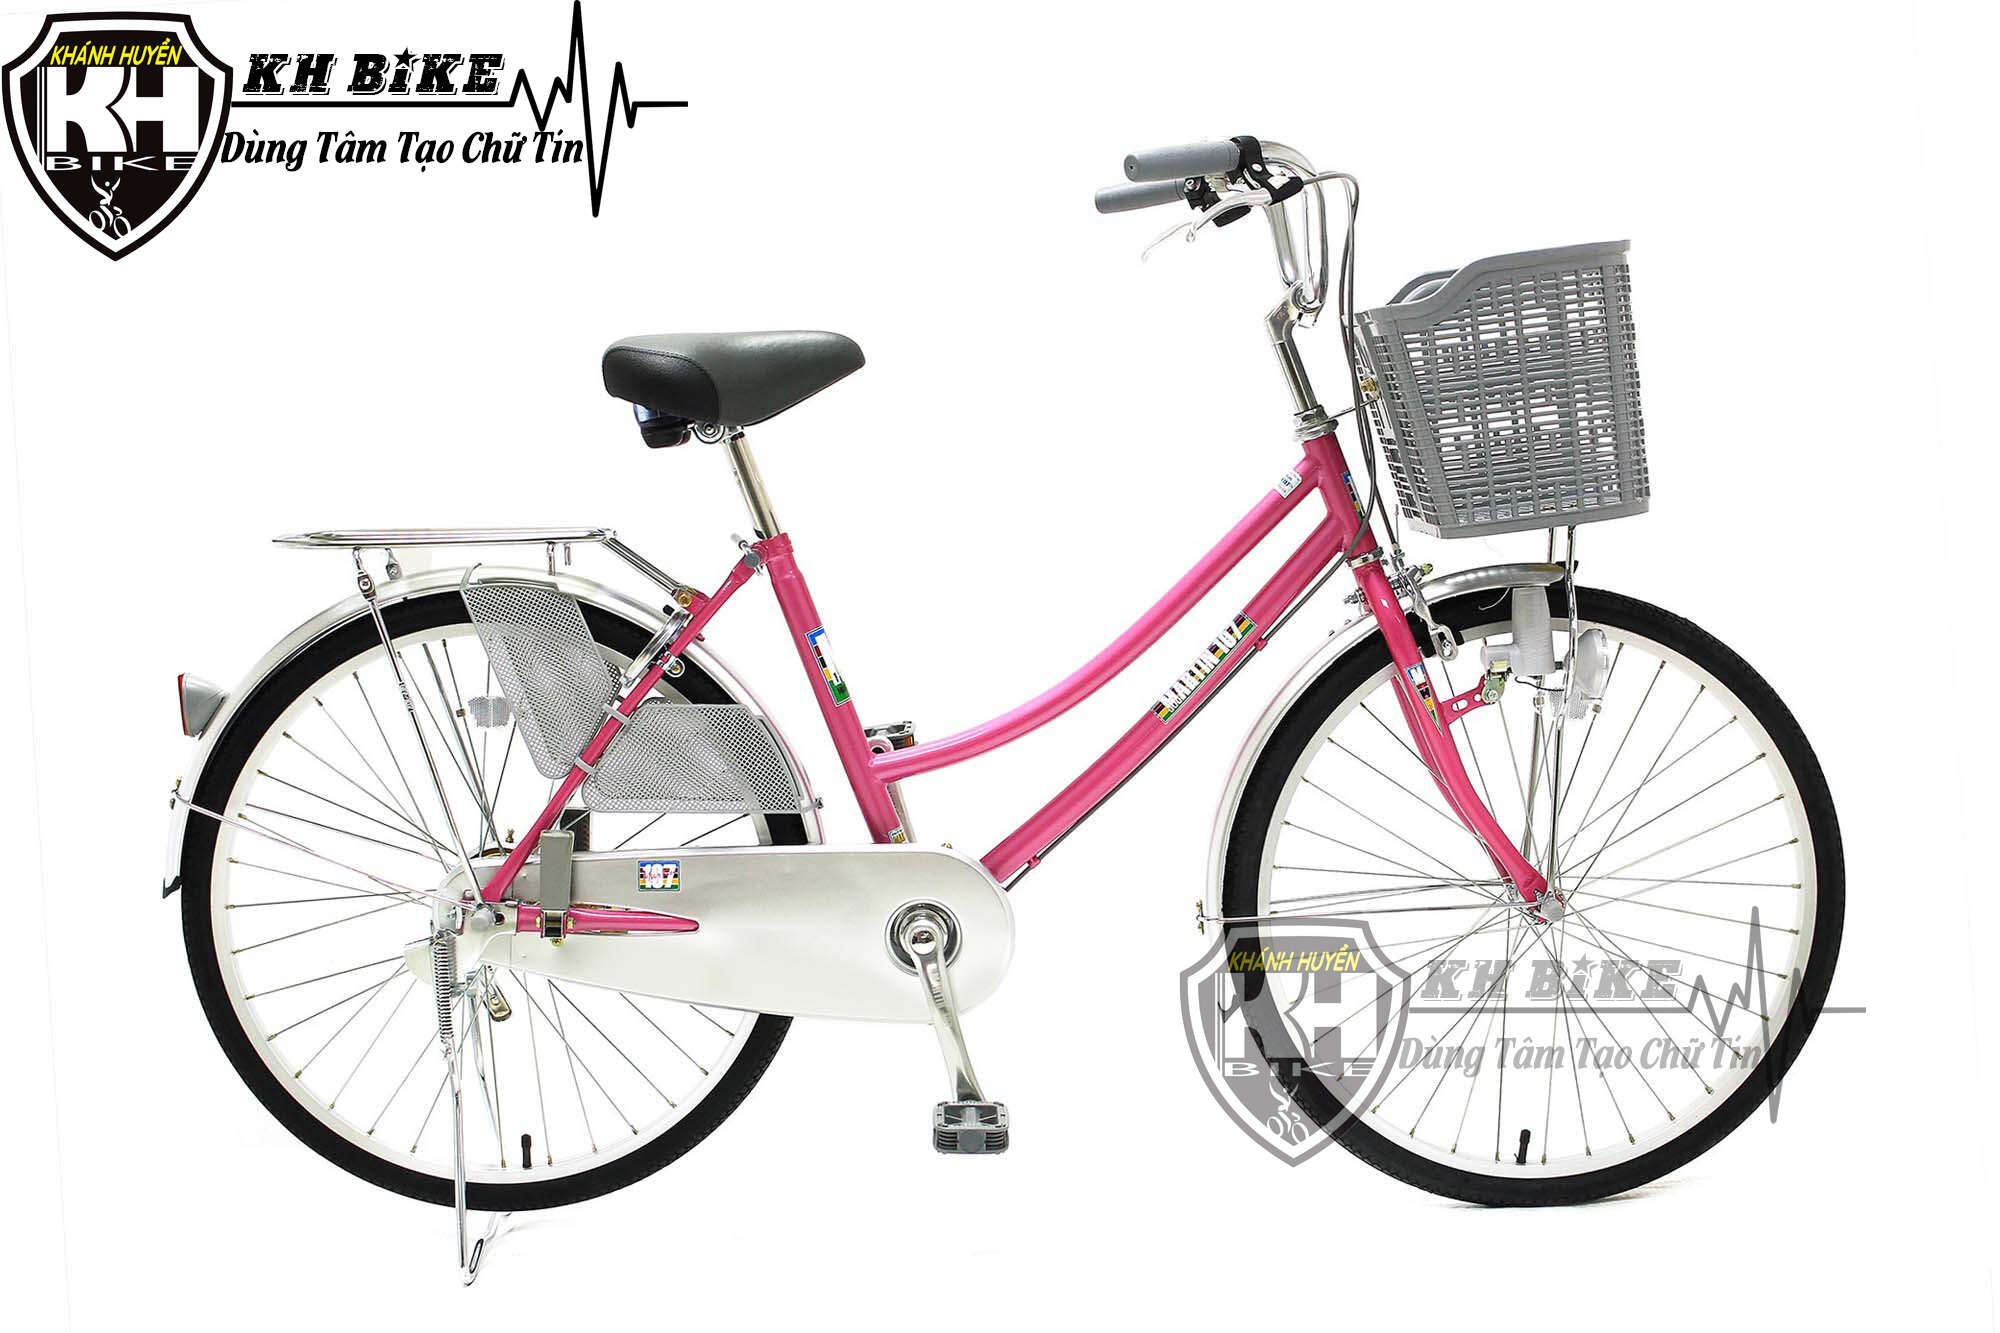 Nhiều Khách sản phẩm ở ngọc thụy tiếp tục mua sắm xe đạp điện thể thao bên trên FBike